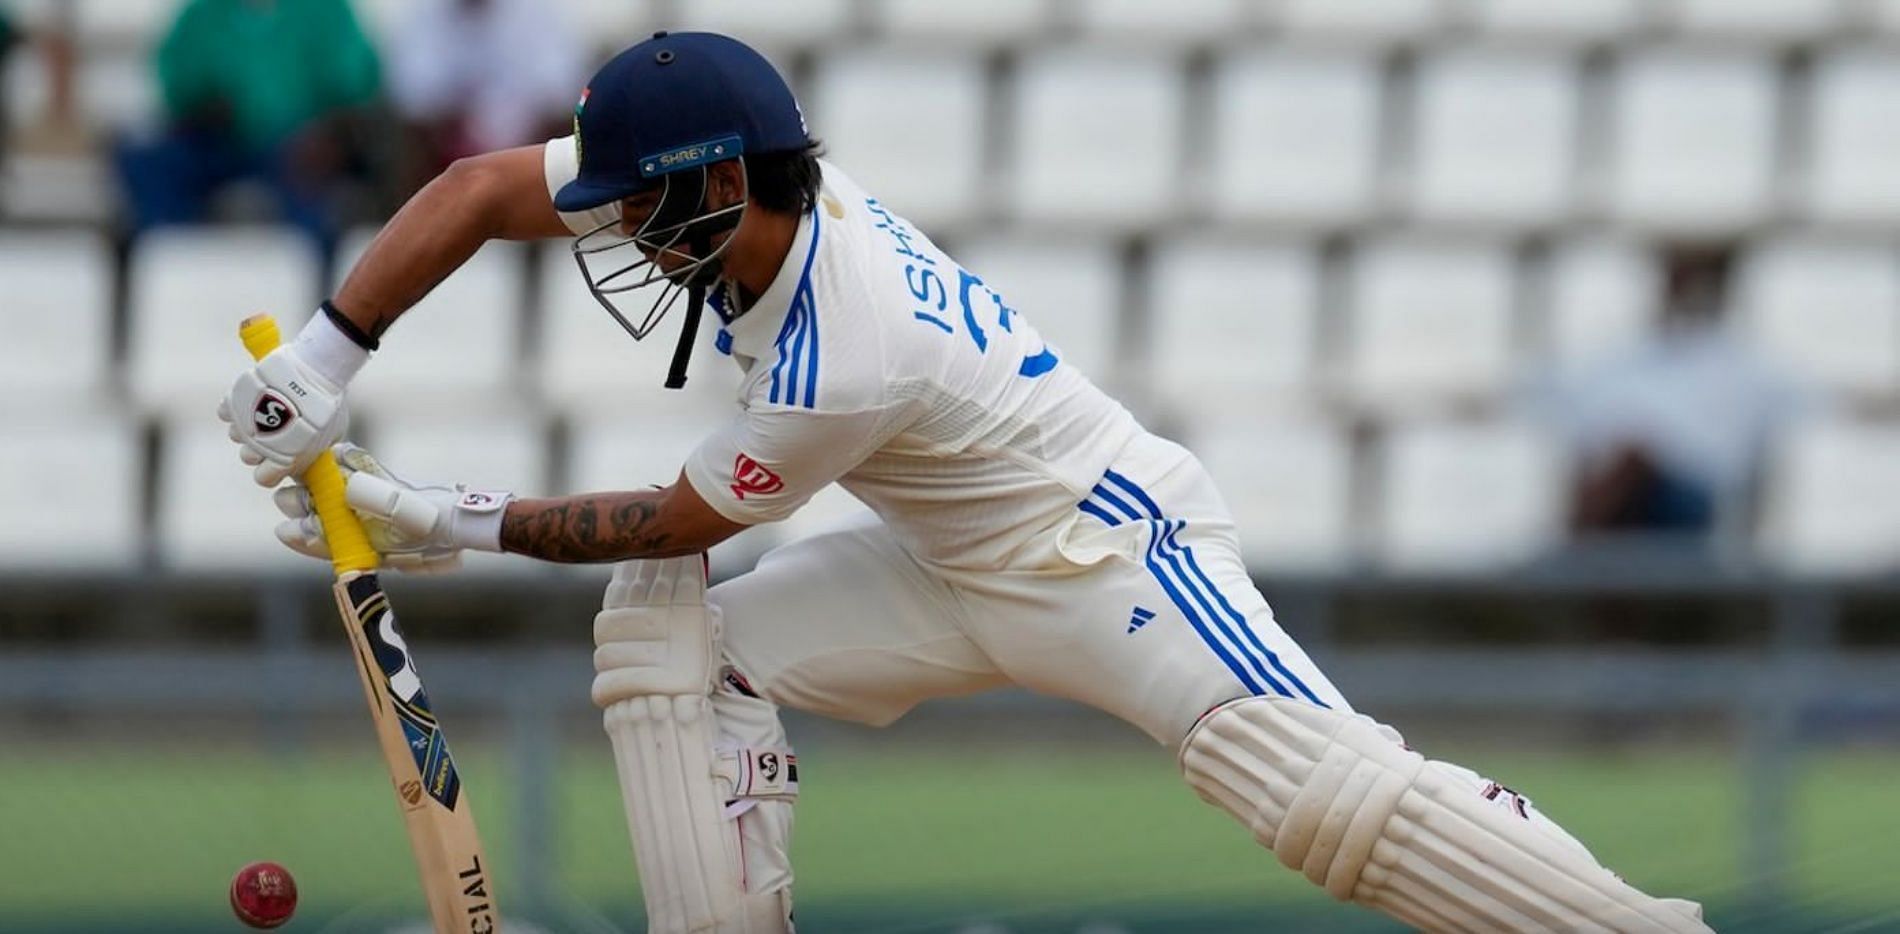 Ishan Kishan batting on his Test debut. (Pic: BCCI)